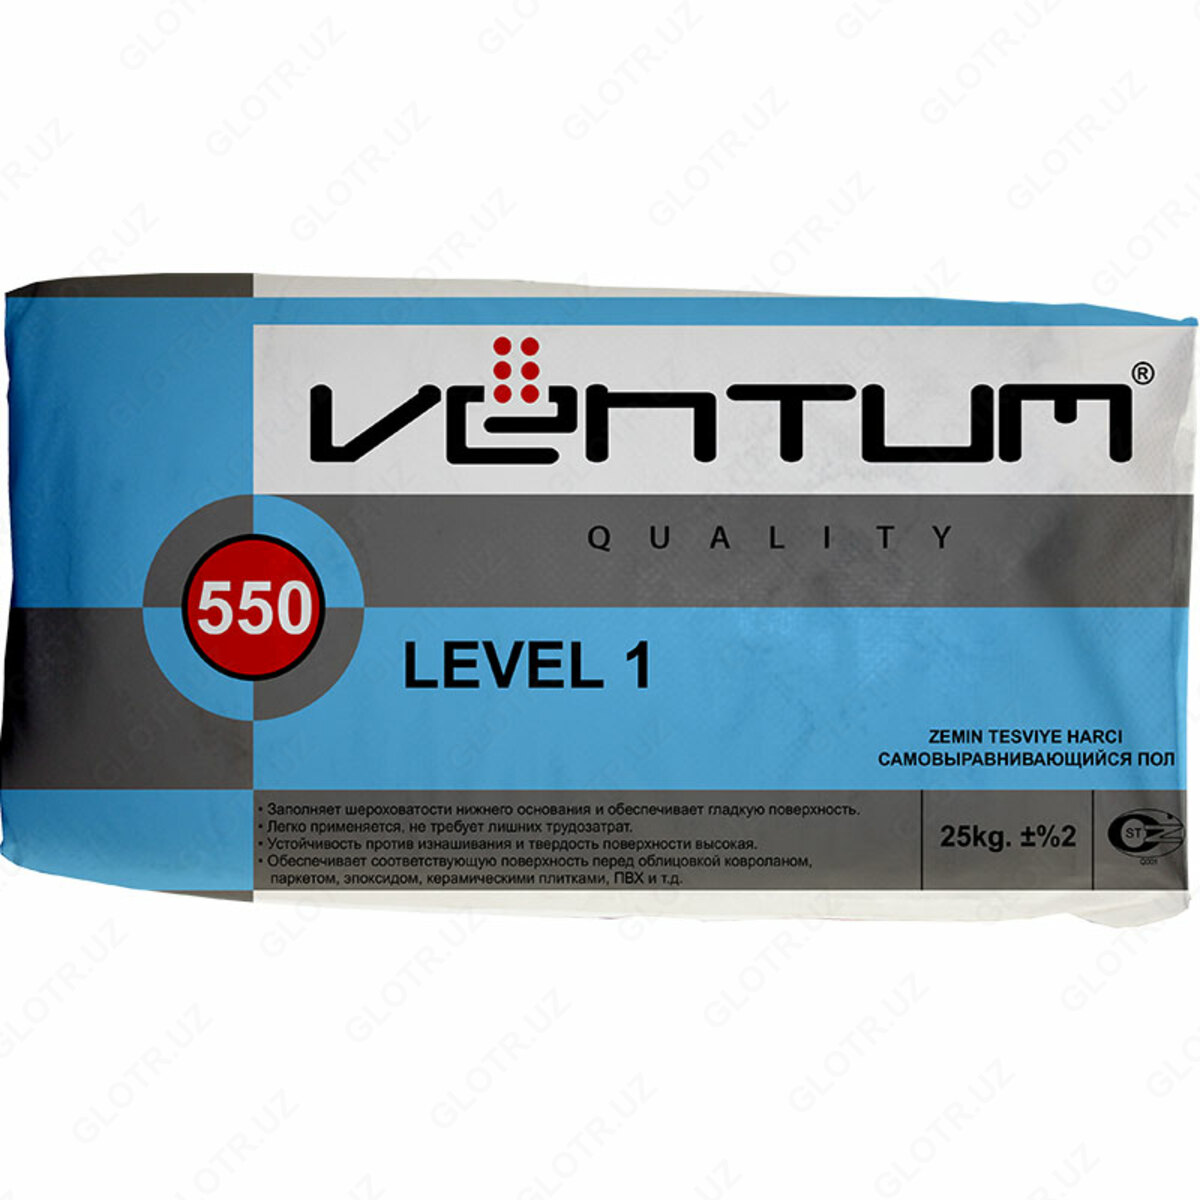 Наливной пол - "Ventum" level1 - 25кг. Наливной пол - "Ventum" Level 1-550. Ventum 550. Ventum 550 наливной пол 25кг.